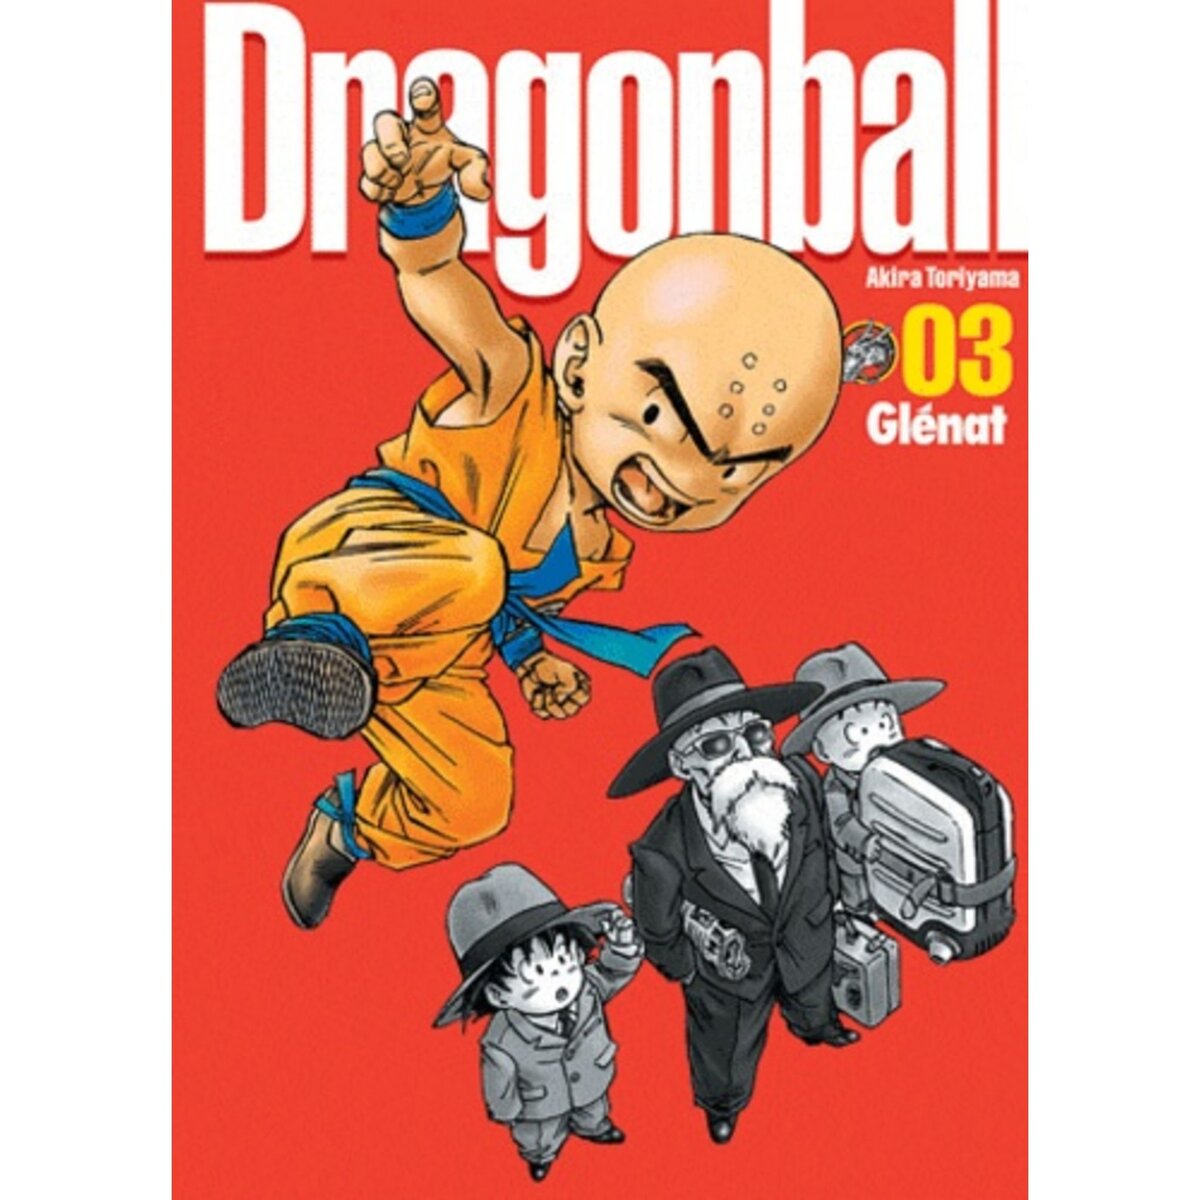  DRAGON BALL PERFECT EDITION TOME 3, Toriyama Akira